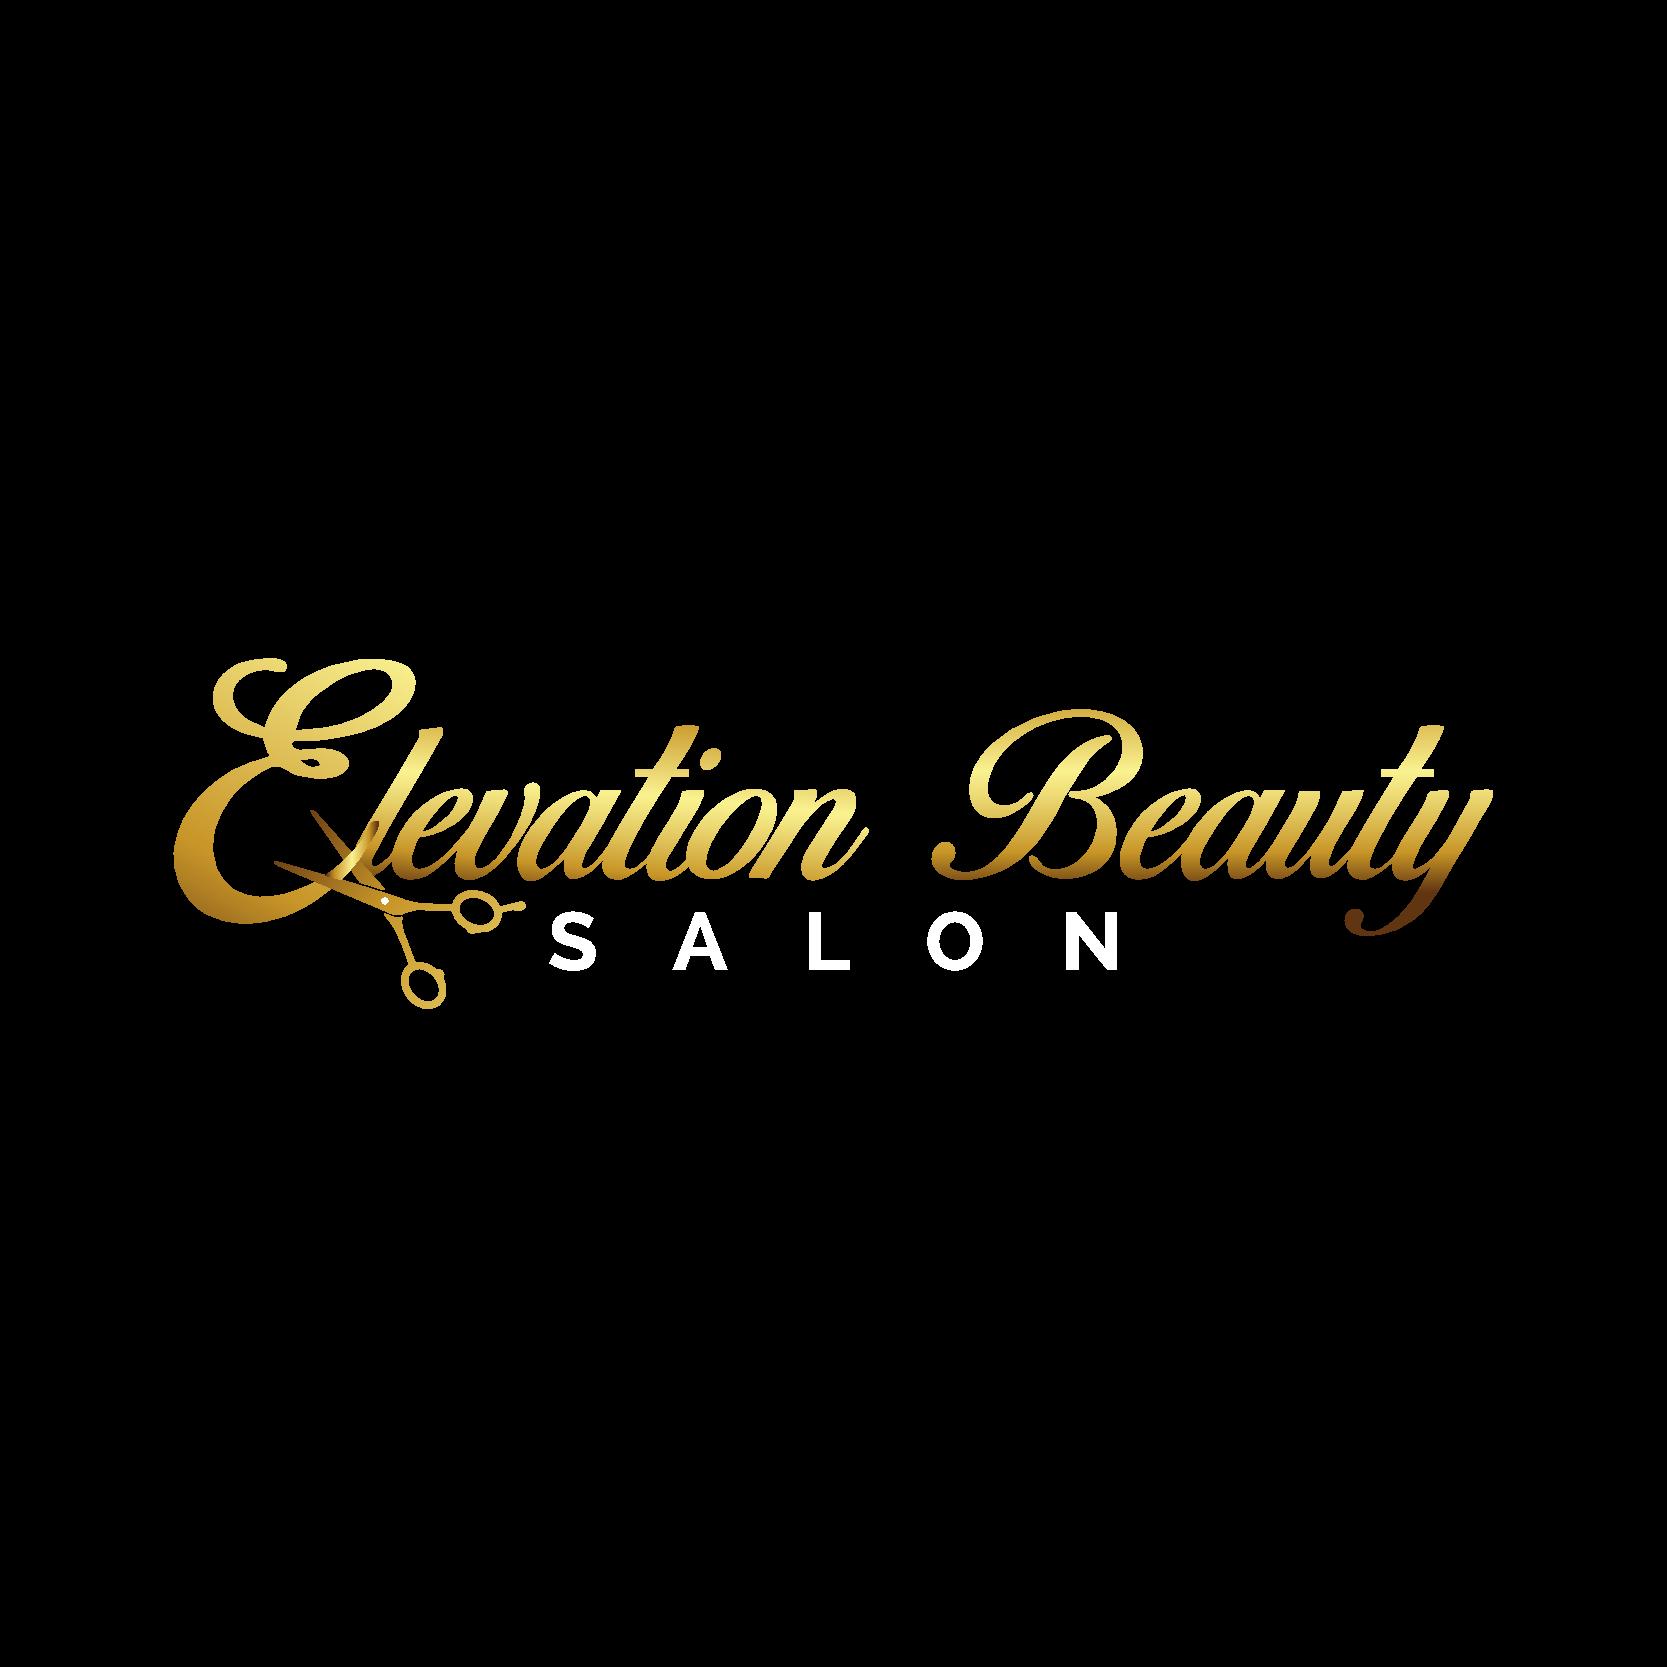 Elevation Beauty Salon